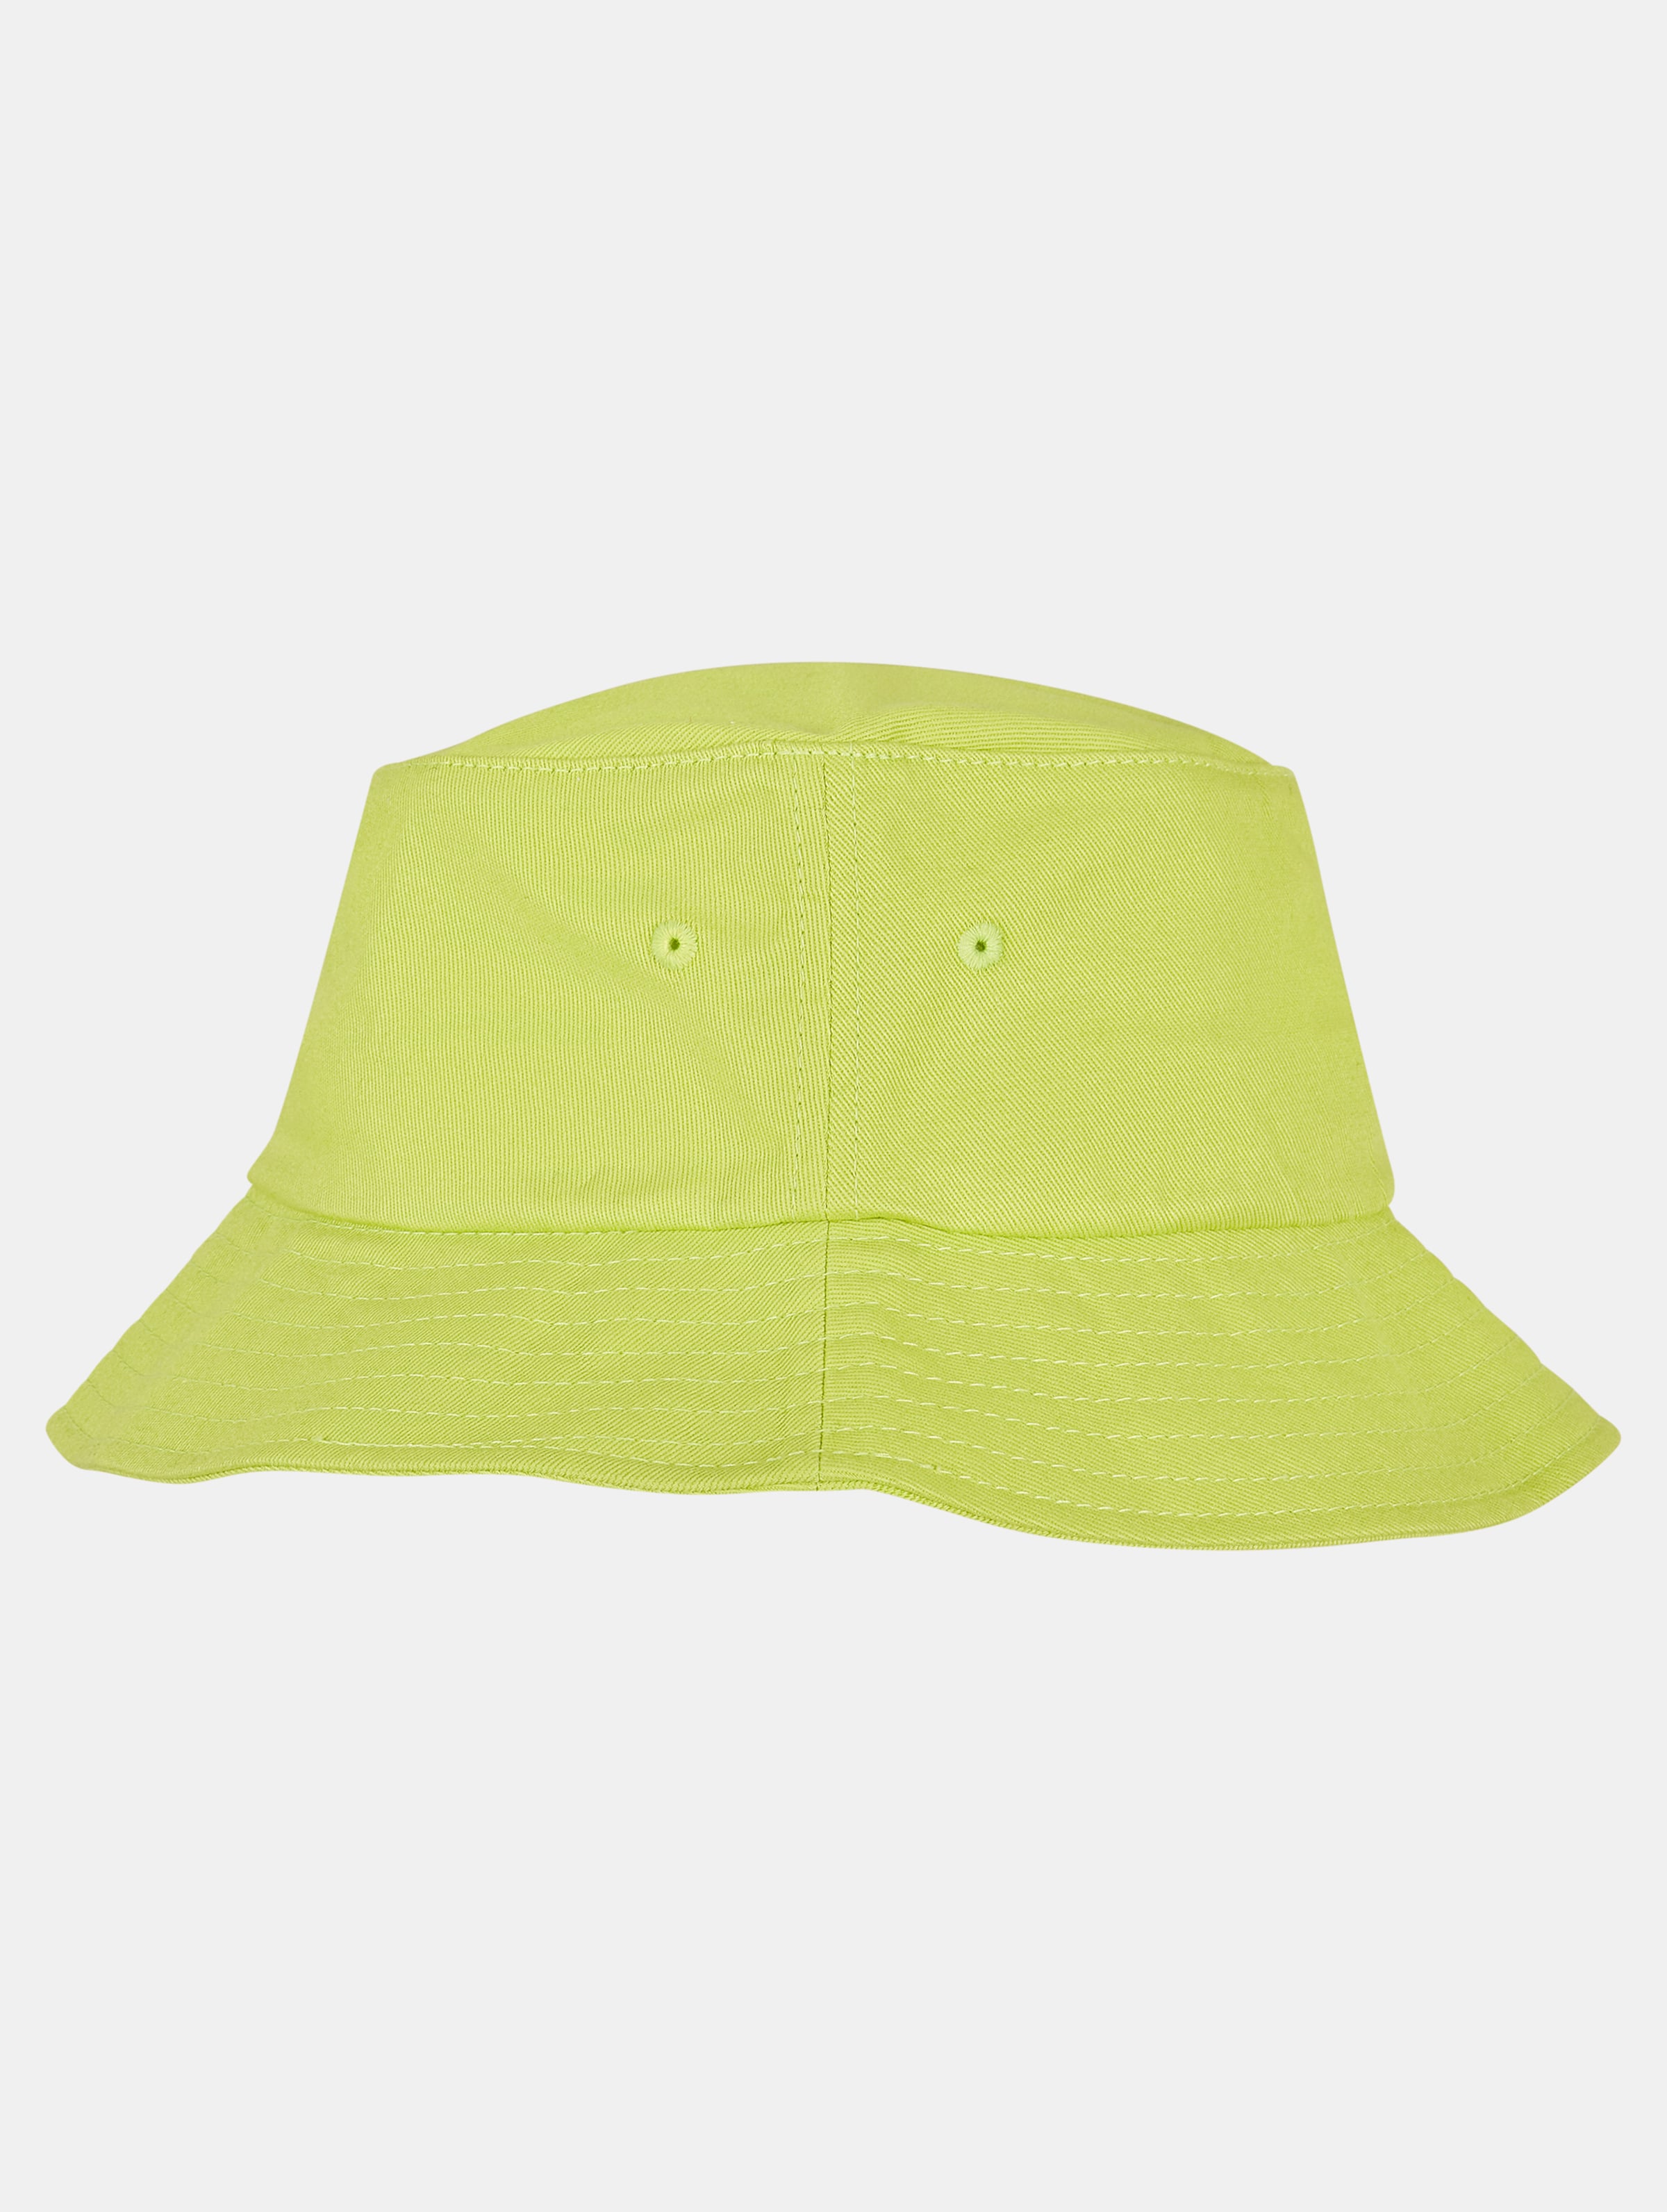 Flexfit Bucket hat / Vissershoed Flexfit Cotton Twill Groen